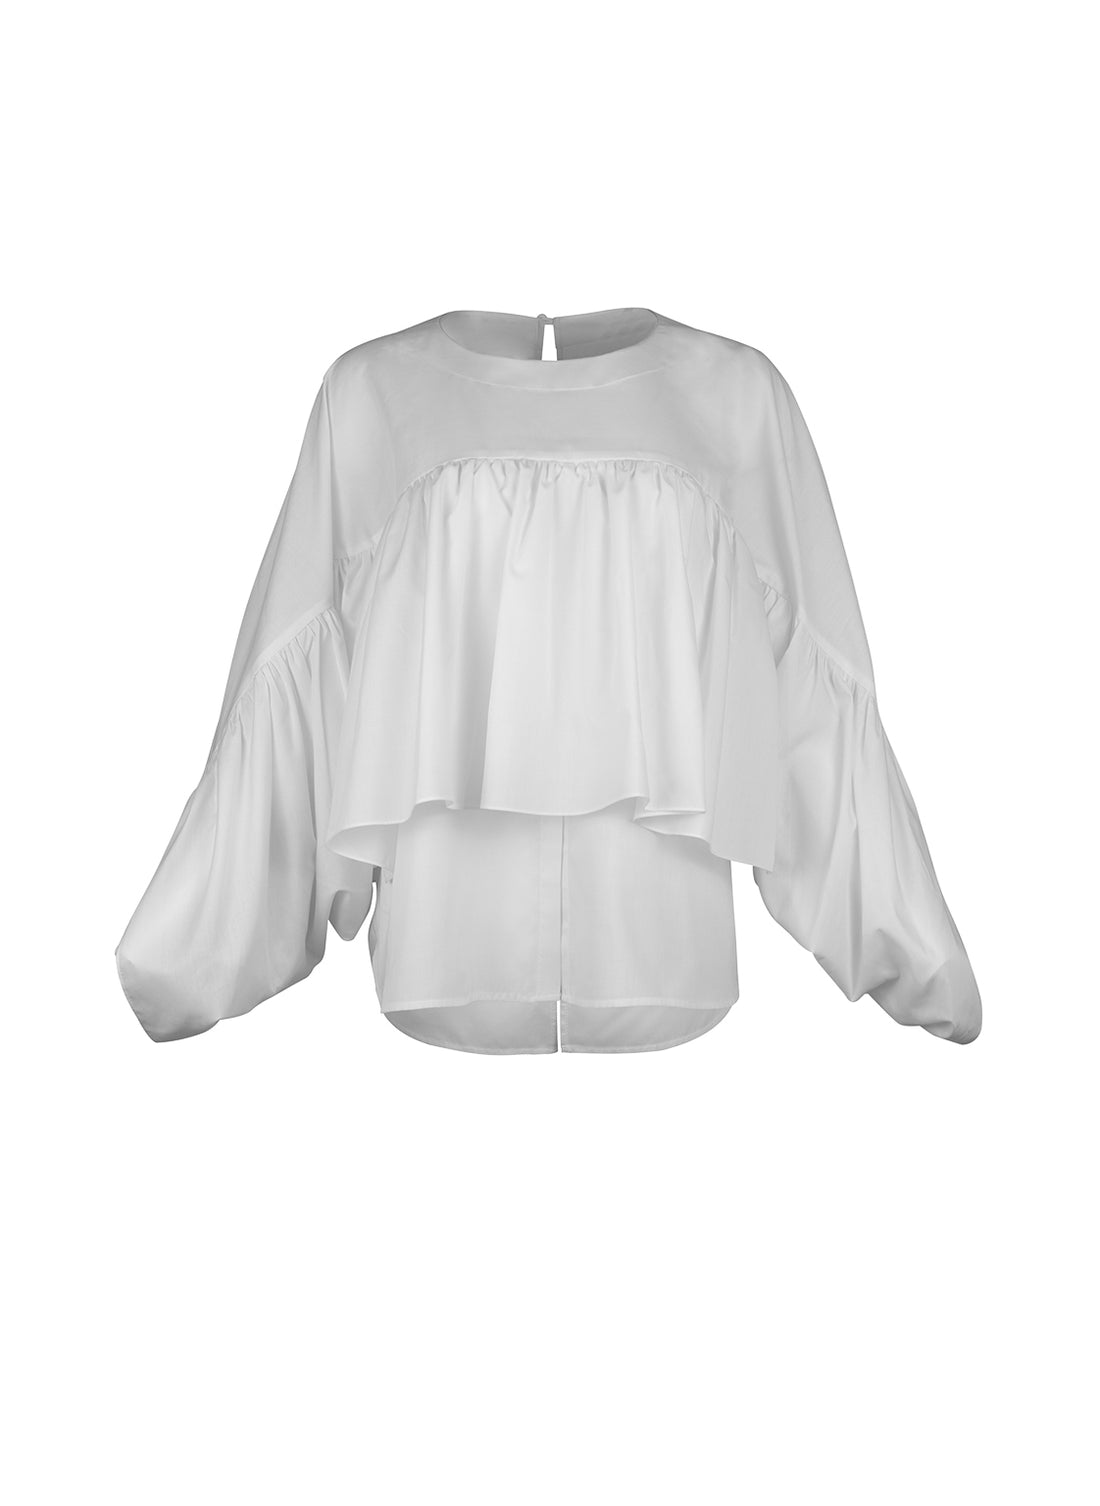 Bluse aus 100% feiner Baumwolle, Rundhalsausschnitt und breiten horizontal verlaufenden Volants im Vorder- und Rückteil sowie an den Ärmeln ausgestattet